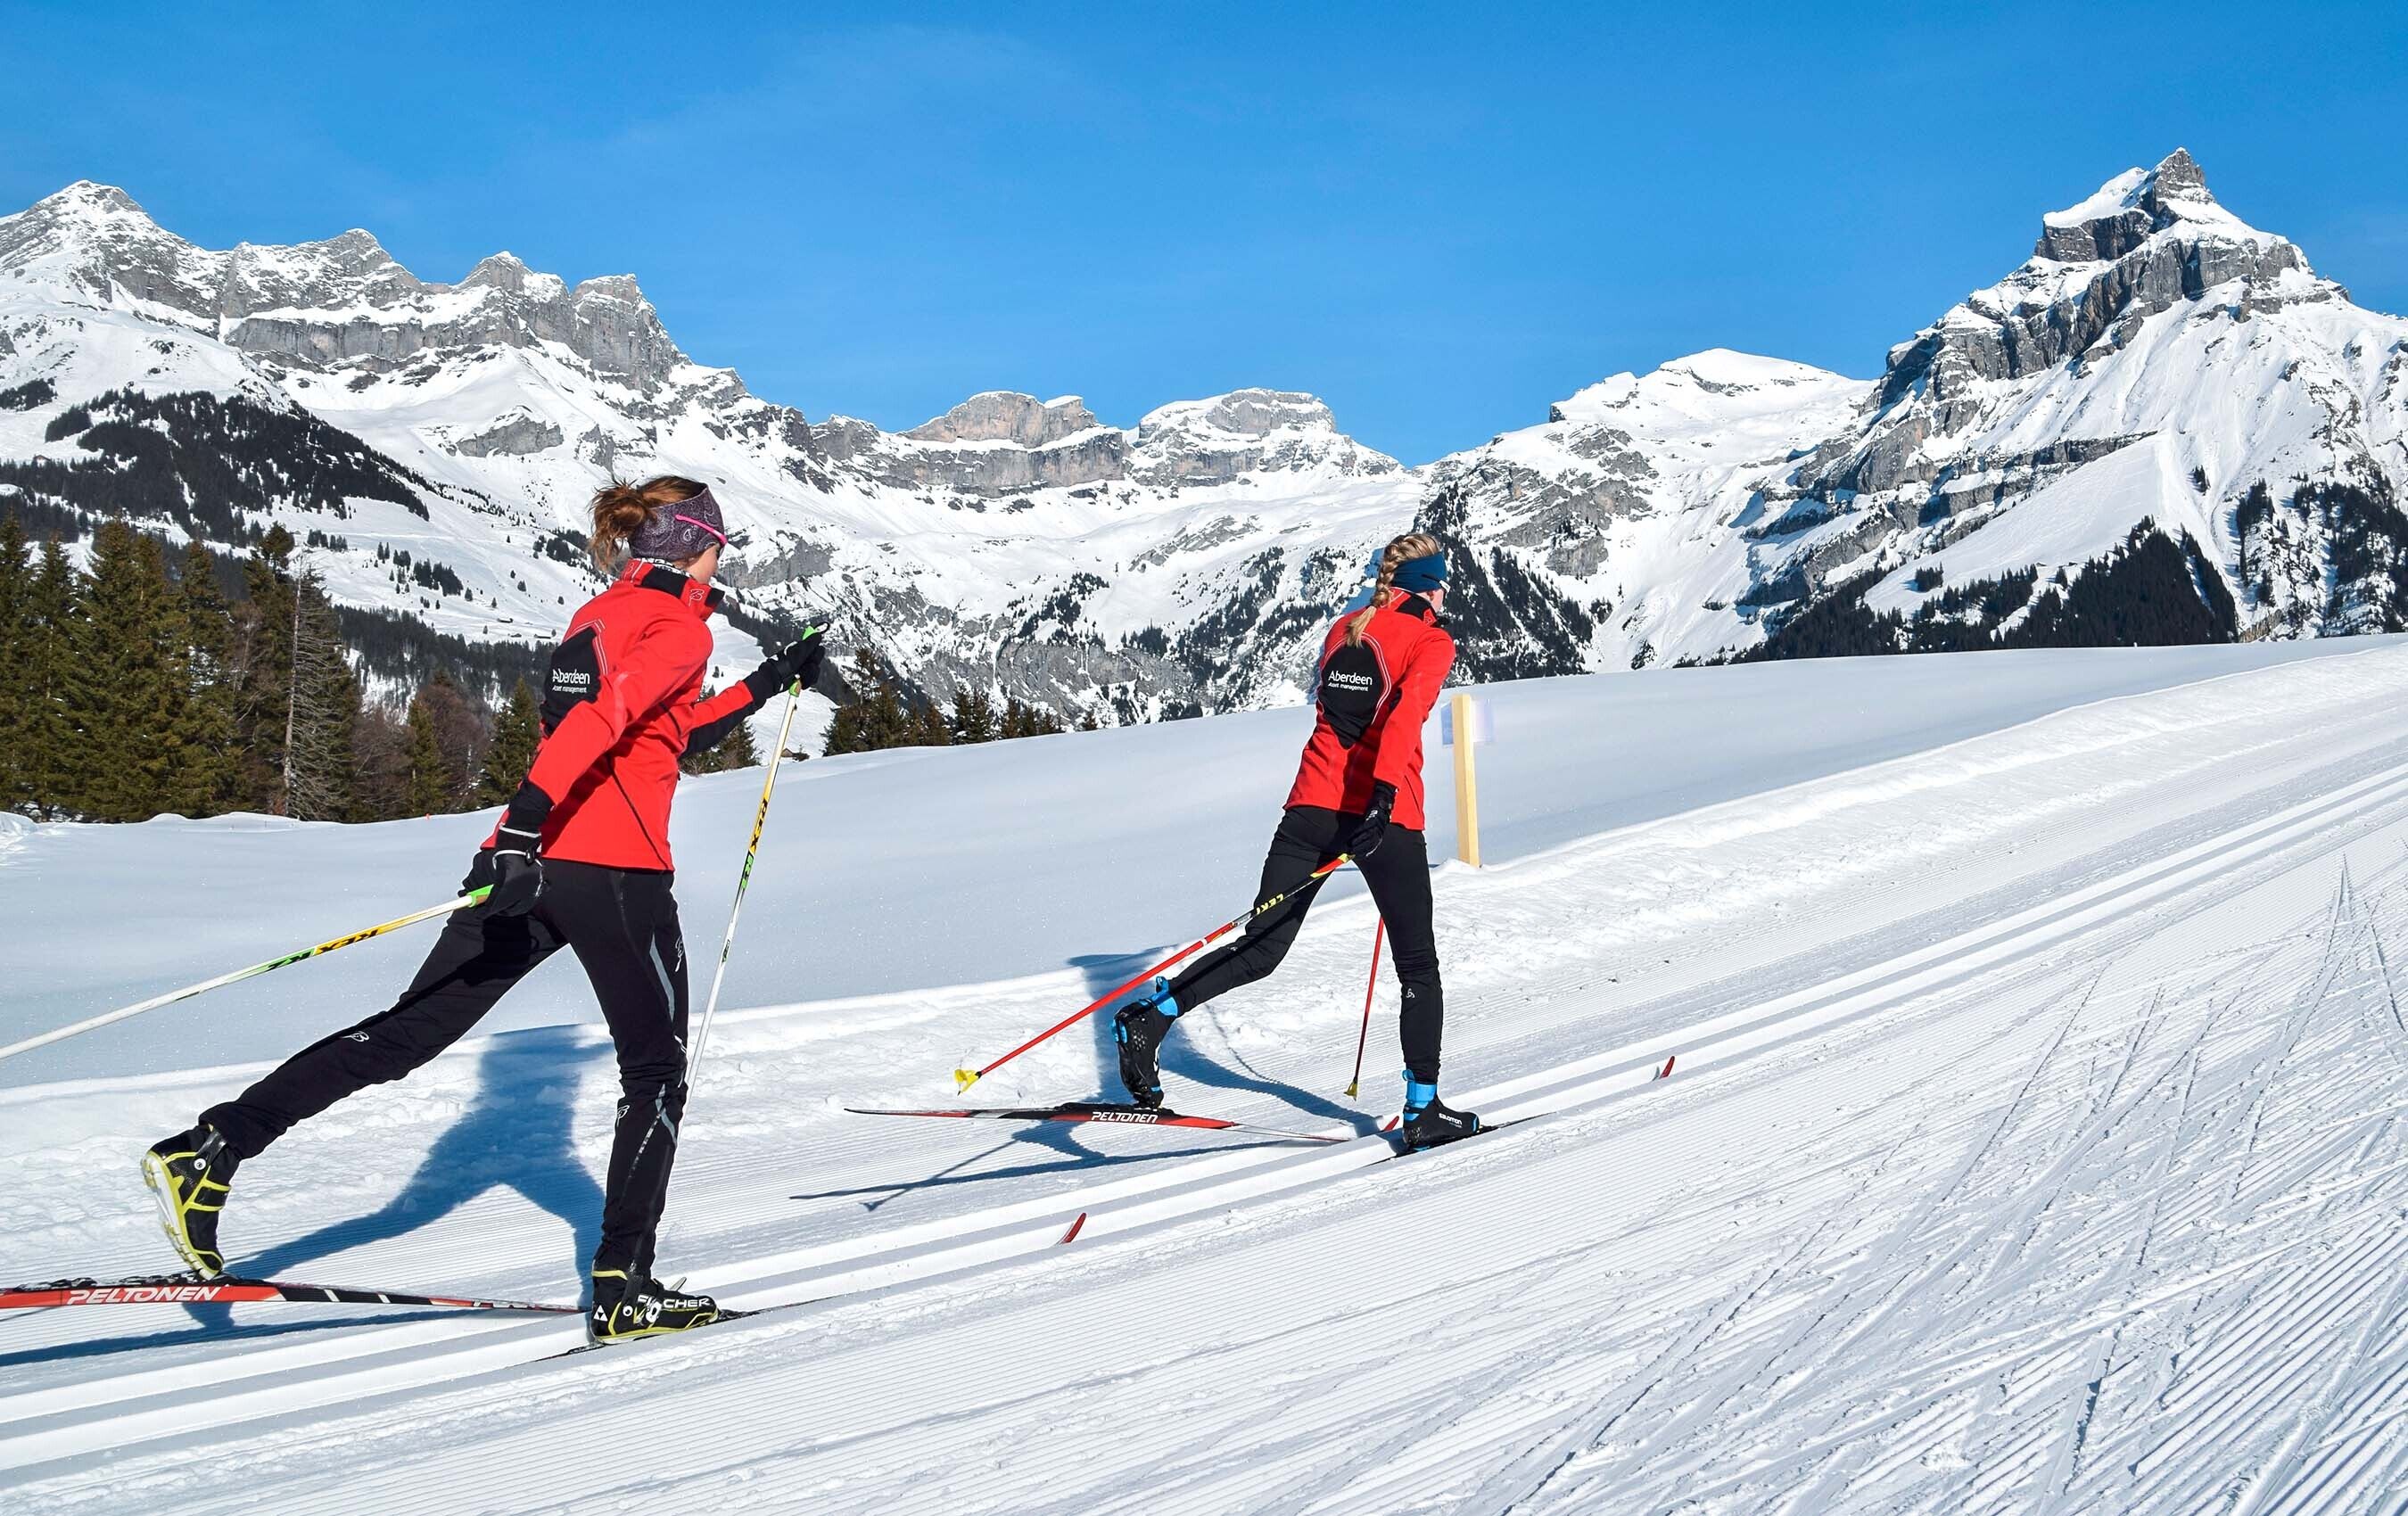 Langlauf skischule engelberg titlis ag 03